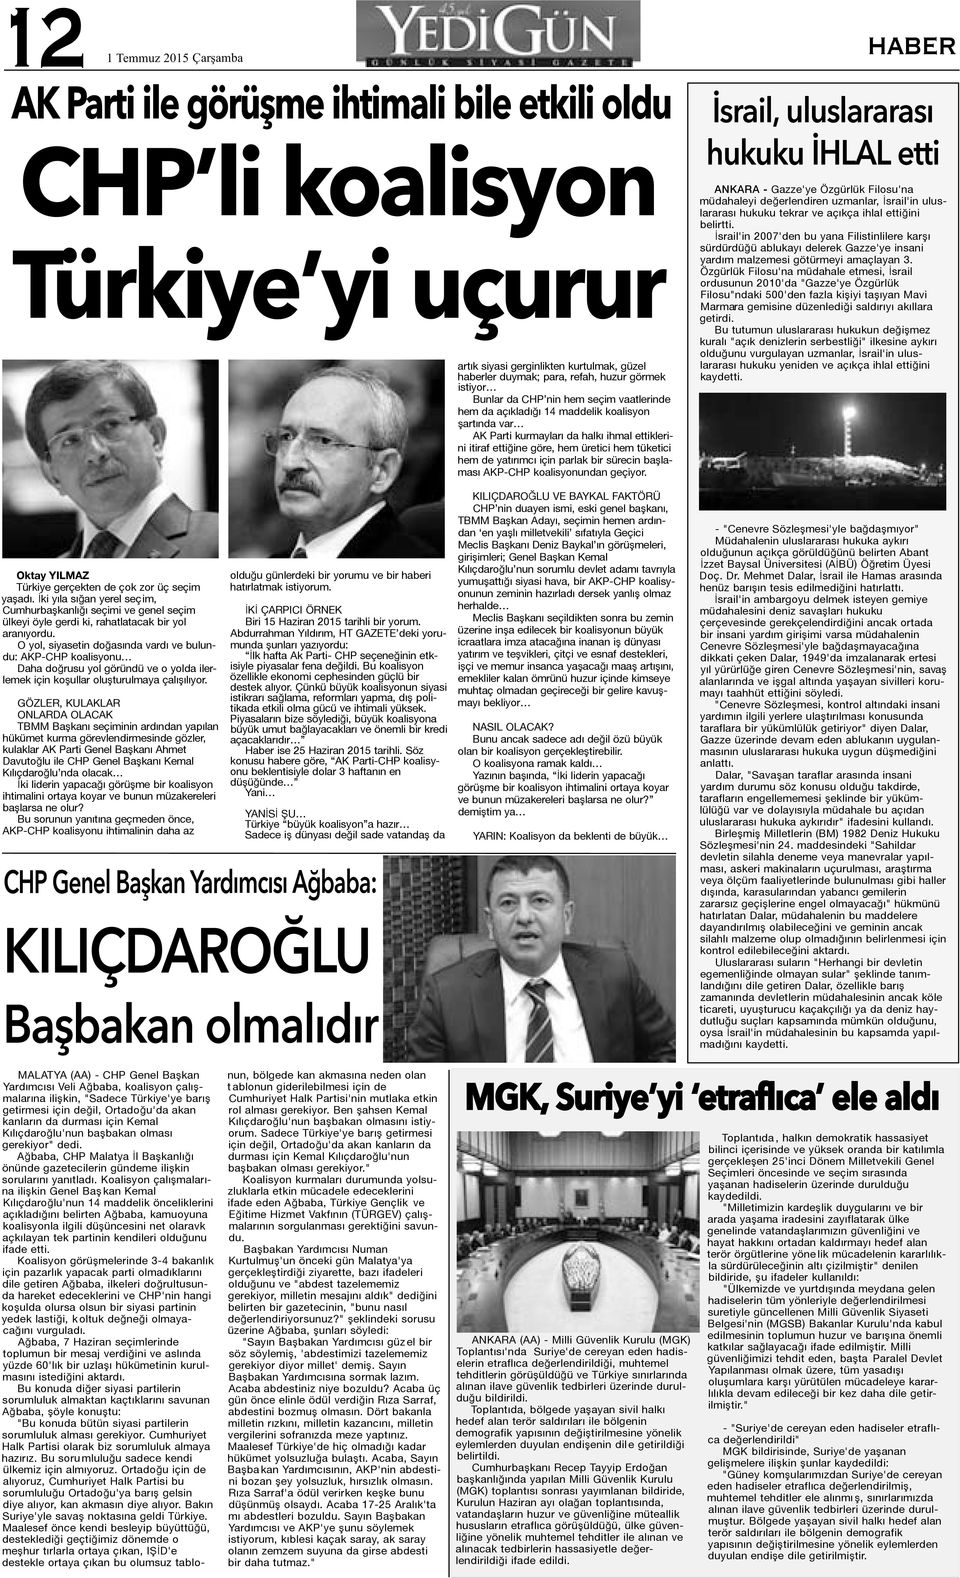 parlak bir sürecin başlaması AKP-CHP koalisyonundan geçiyor.